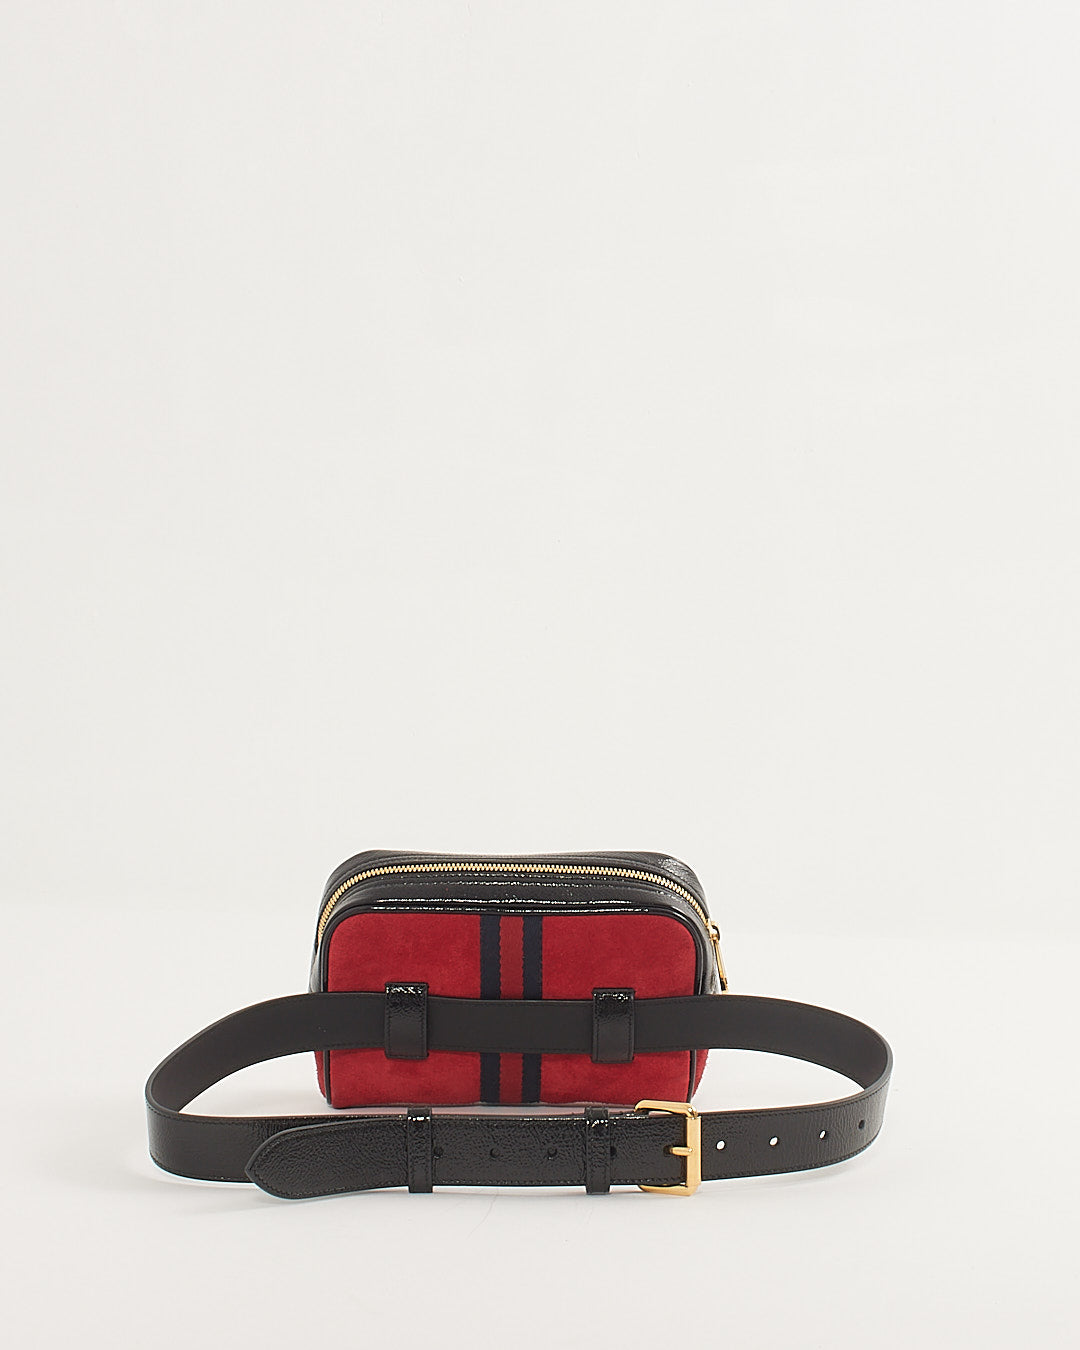 Gucci Petit sac banane Ophidia avec bordure en cuir verni rouge / noir - 85/34